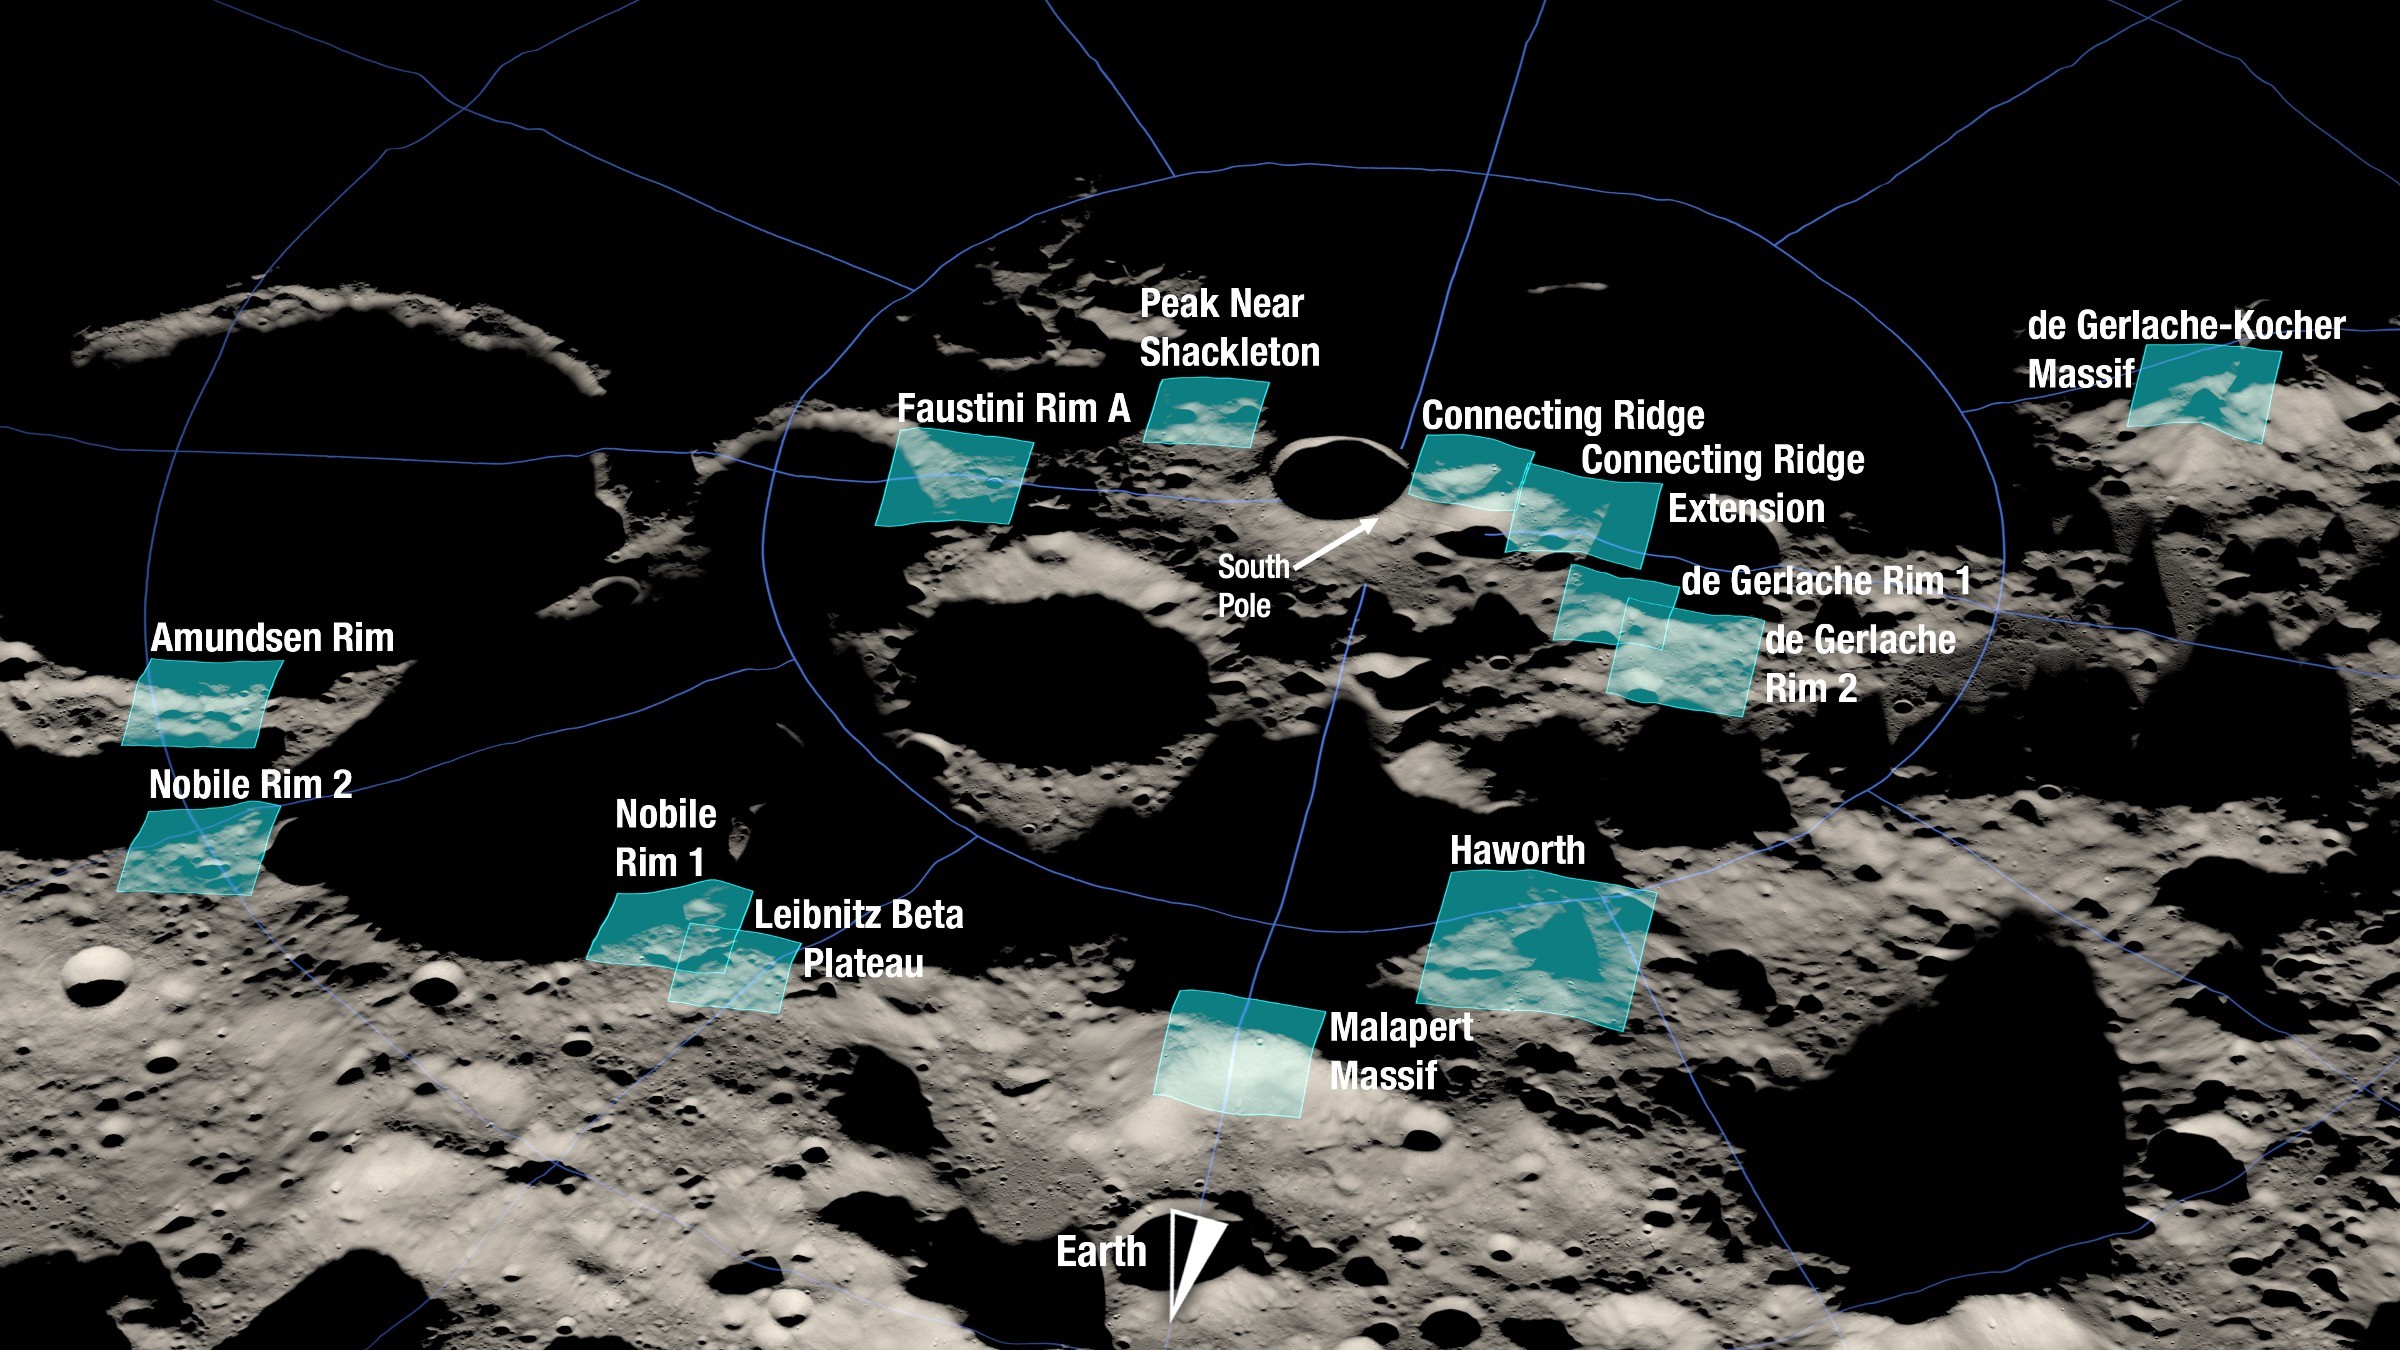 Conheça Os Possíveis Locais De Pouso Da Próxima Missão Tripulada à Lua Revista Galileu Espaço 2520